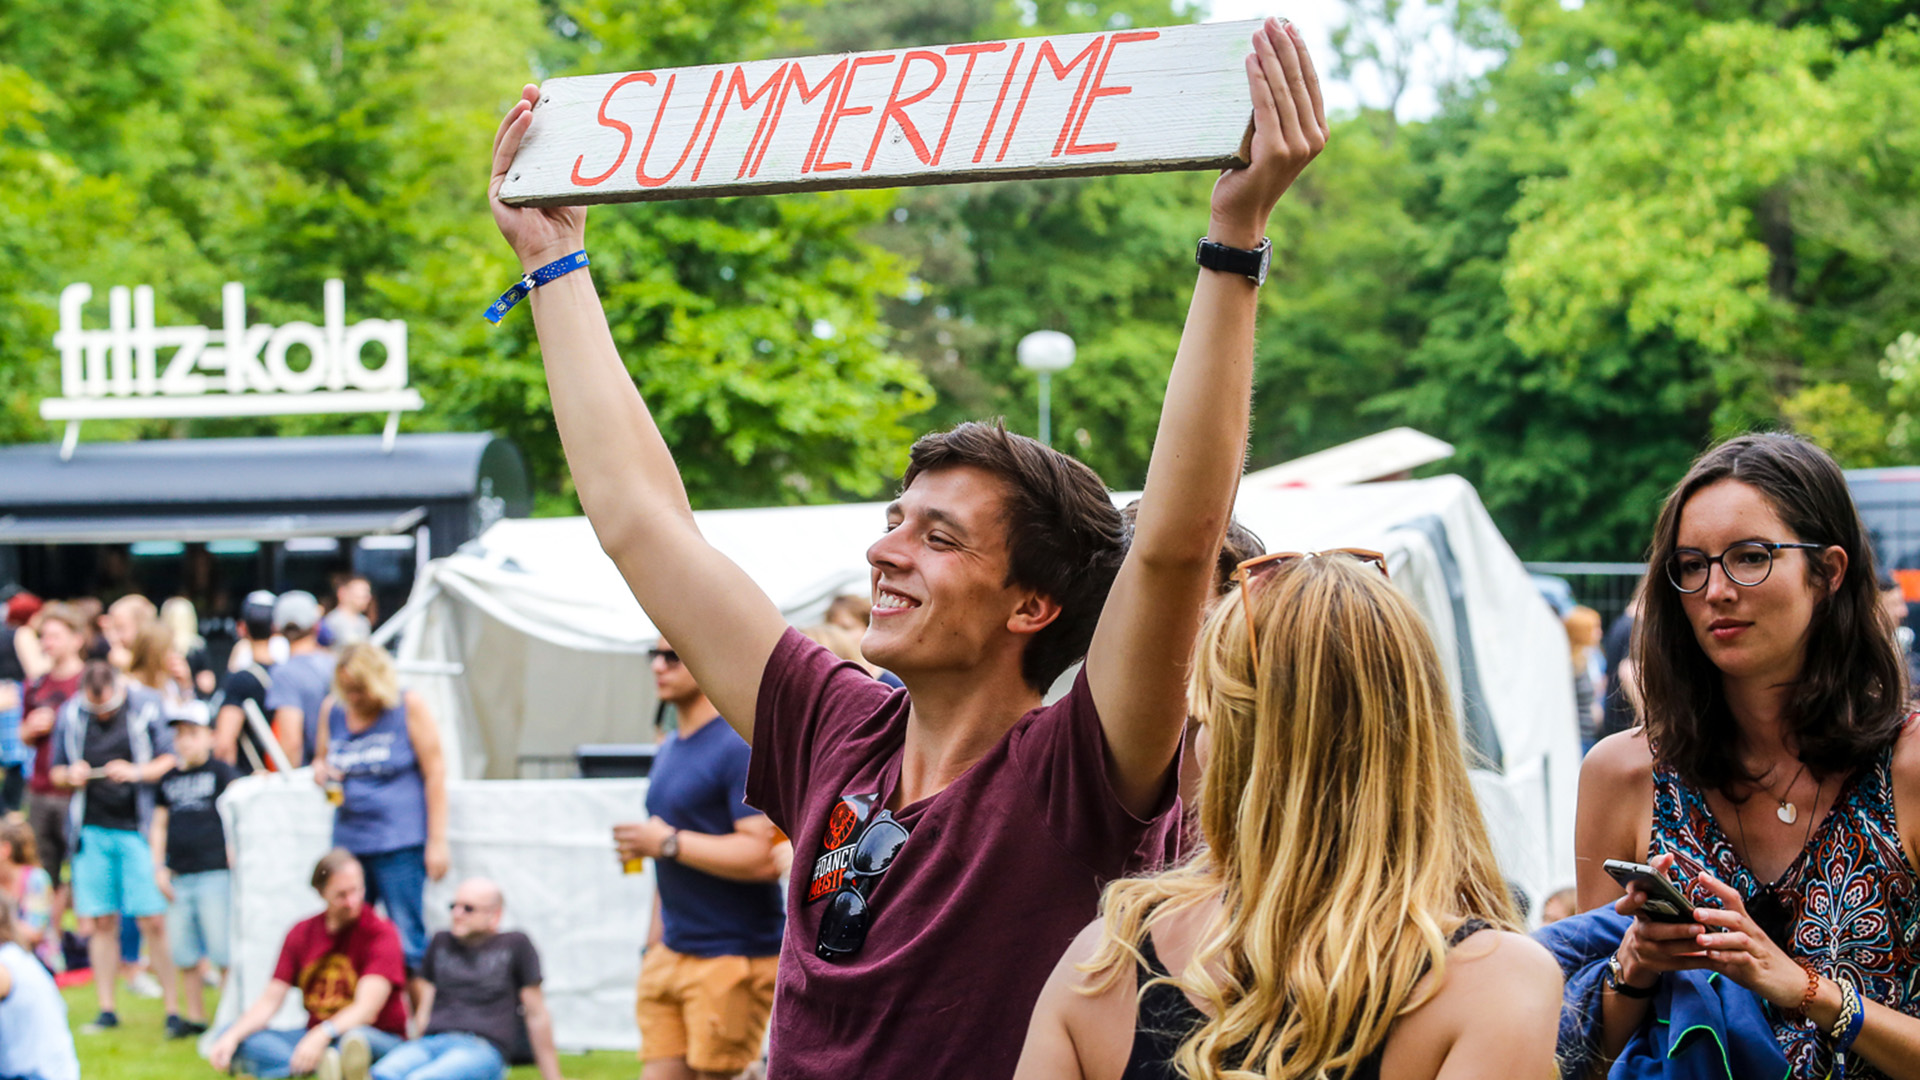 Ein junger Mann hält ein Schild mit der Aufschrift "Summertime" in die Luft. Direkt daneben stehen zwei jüngere Frauen.